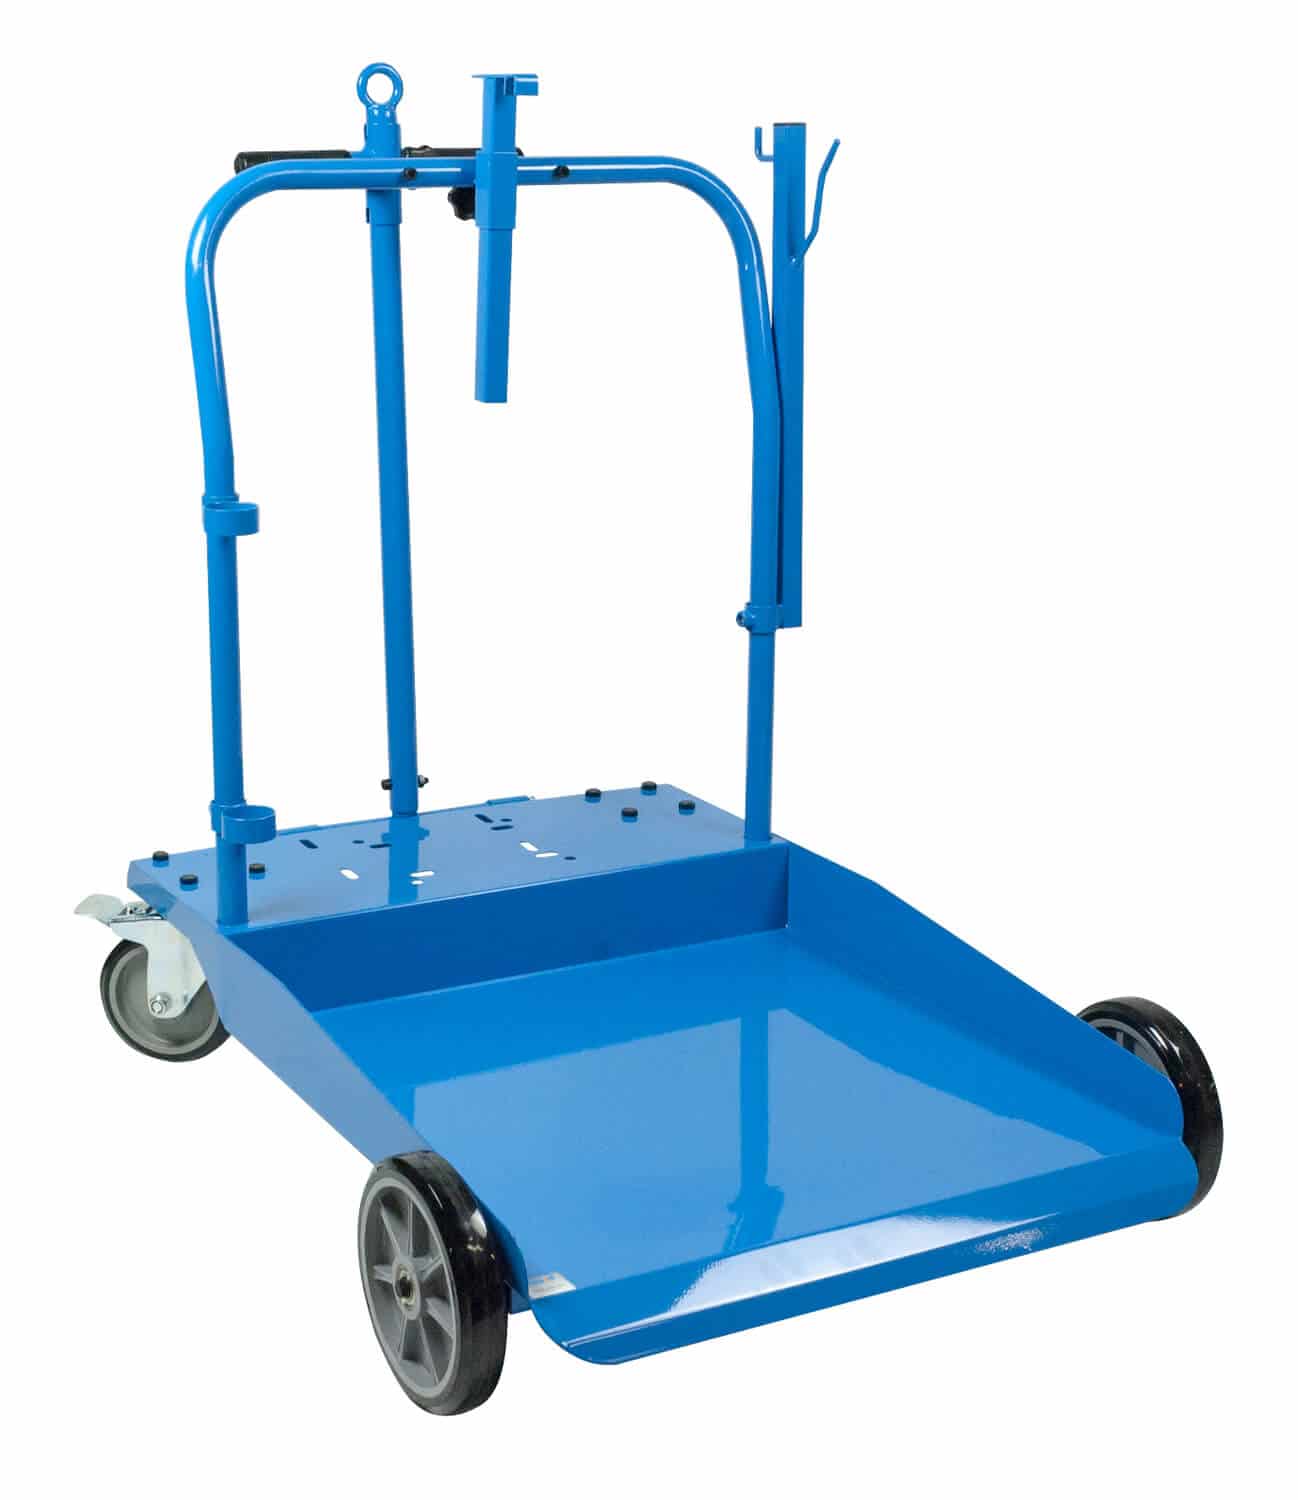 Mobiler Ölwagen für 200 Ltr.-Fässer, aus pulverbeschichtetem Stahlblech in einem ergonomischen und stabilen Design für den täglichen Gebrauch.